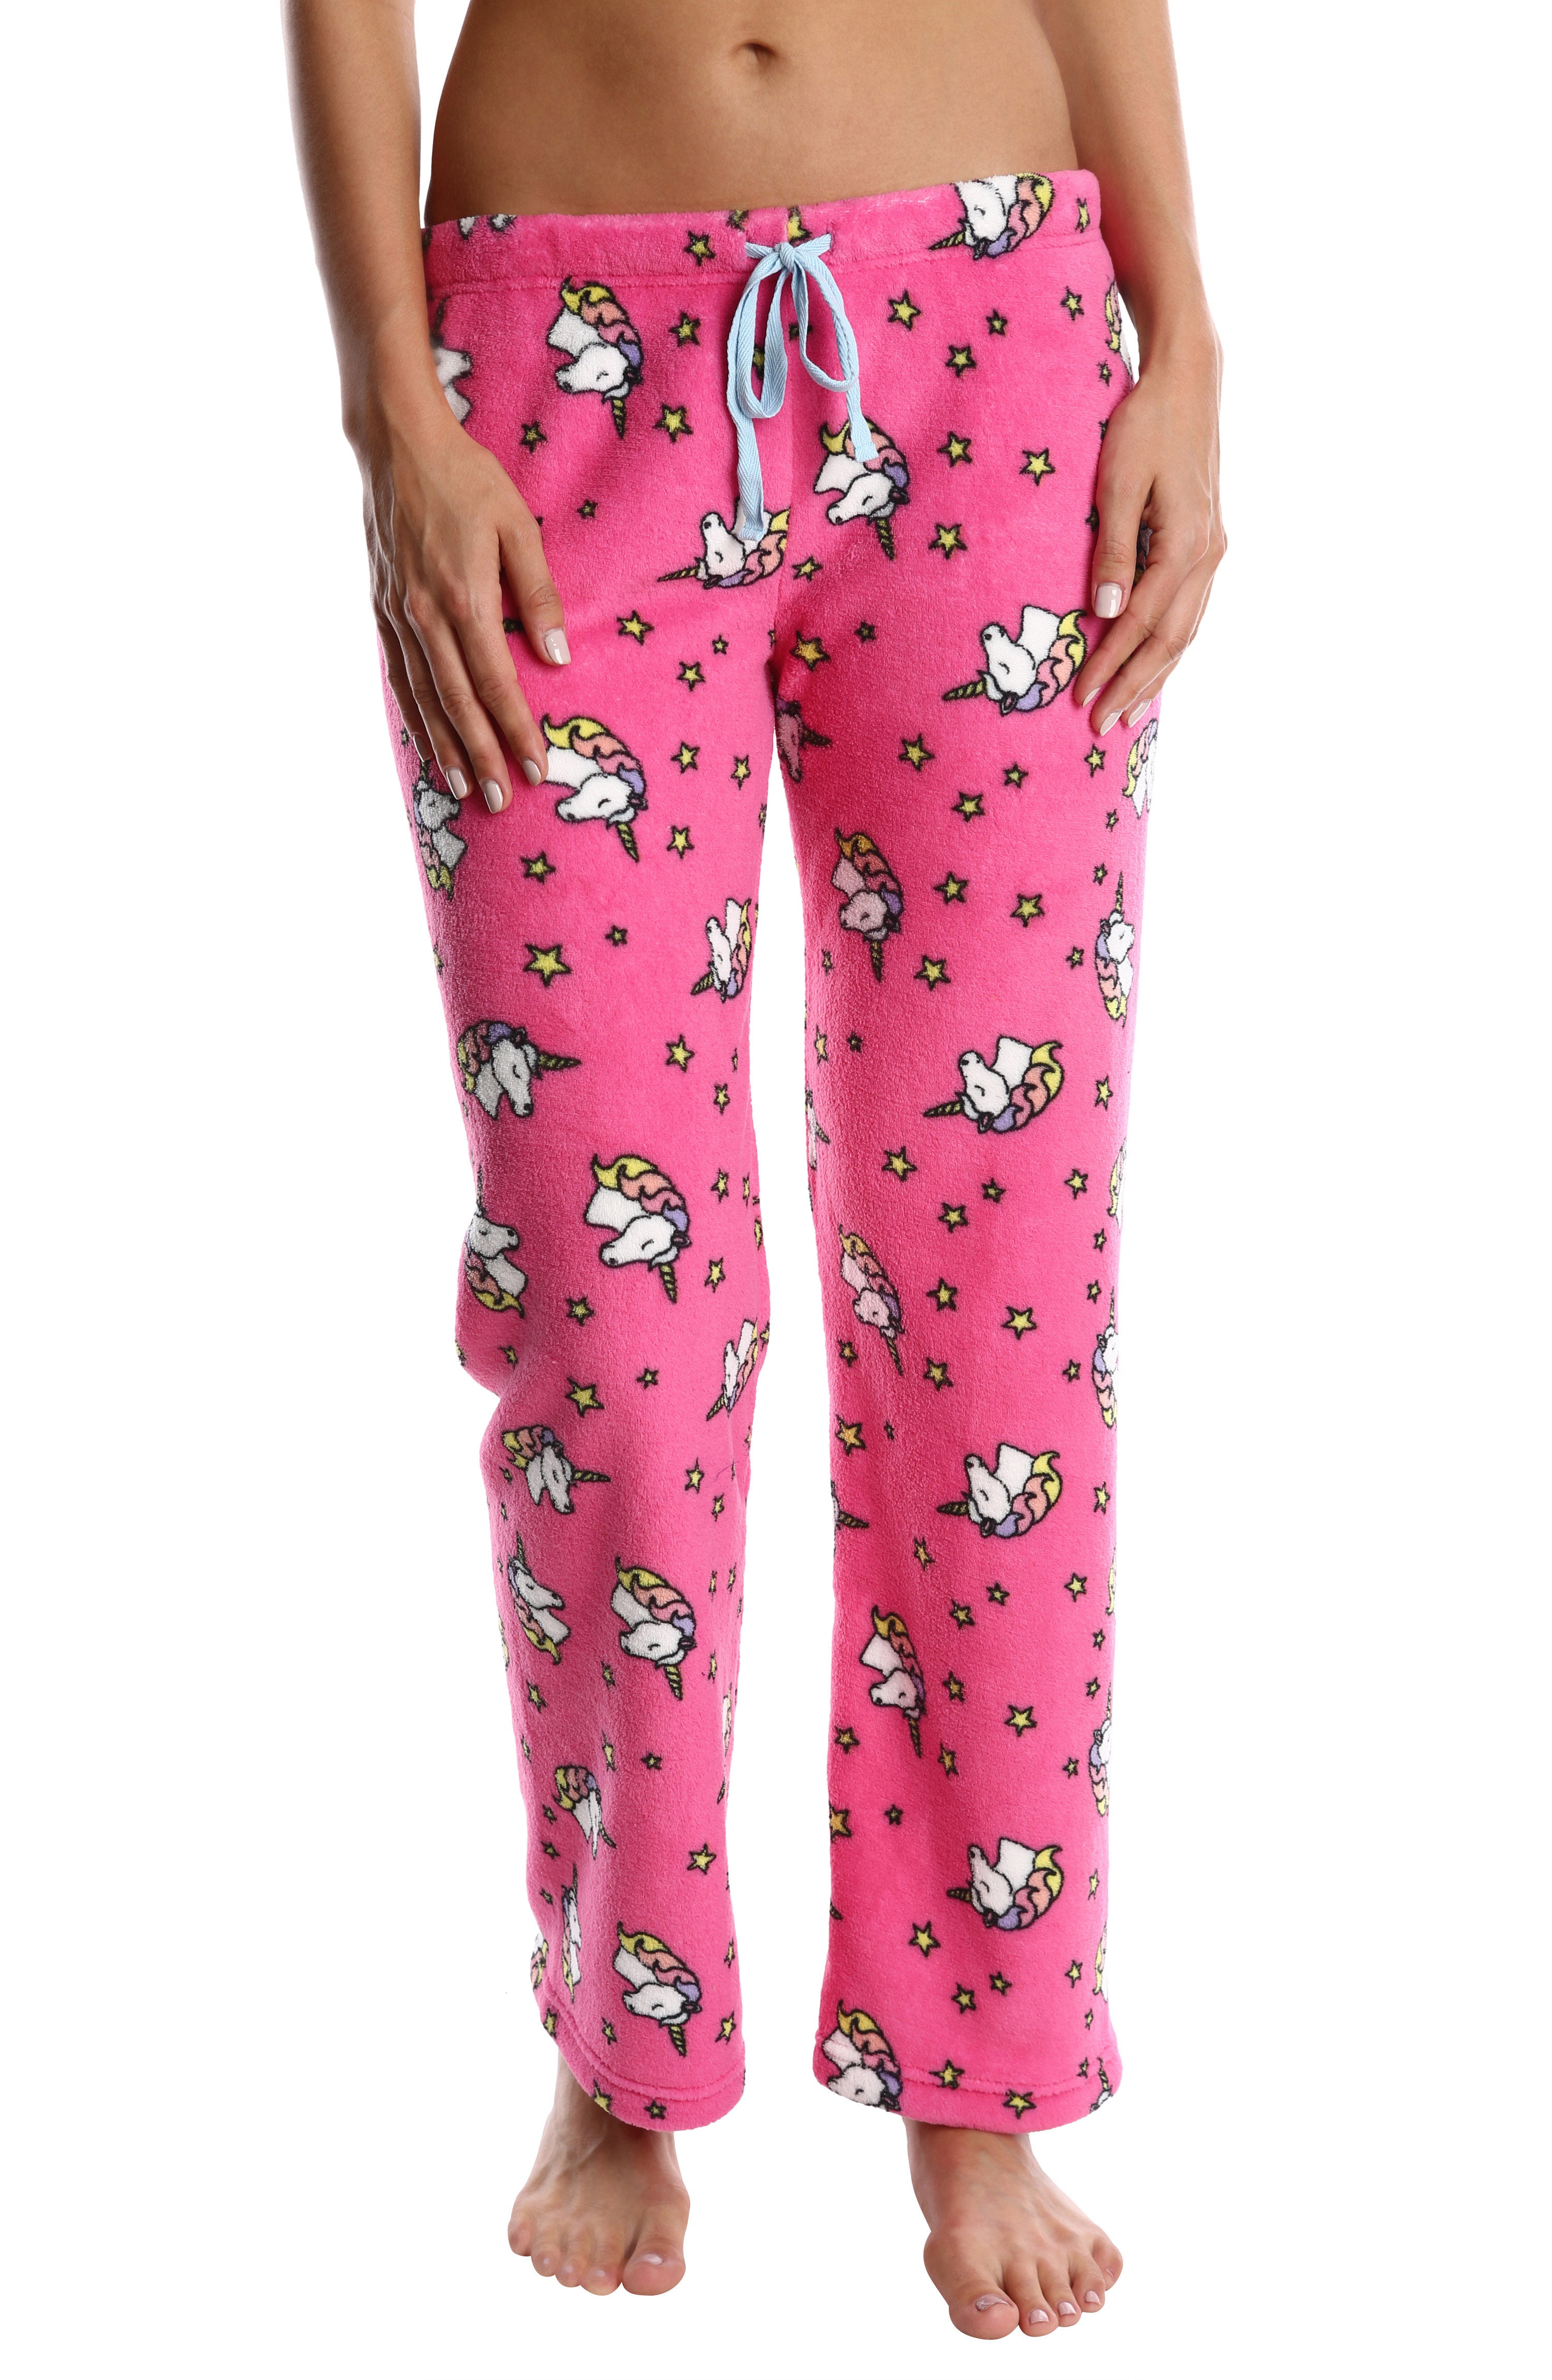 Venta > pijama de unicornio niña walmart > en stock